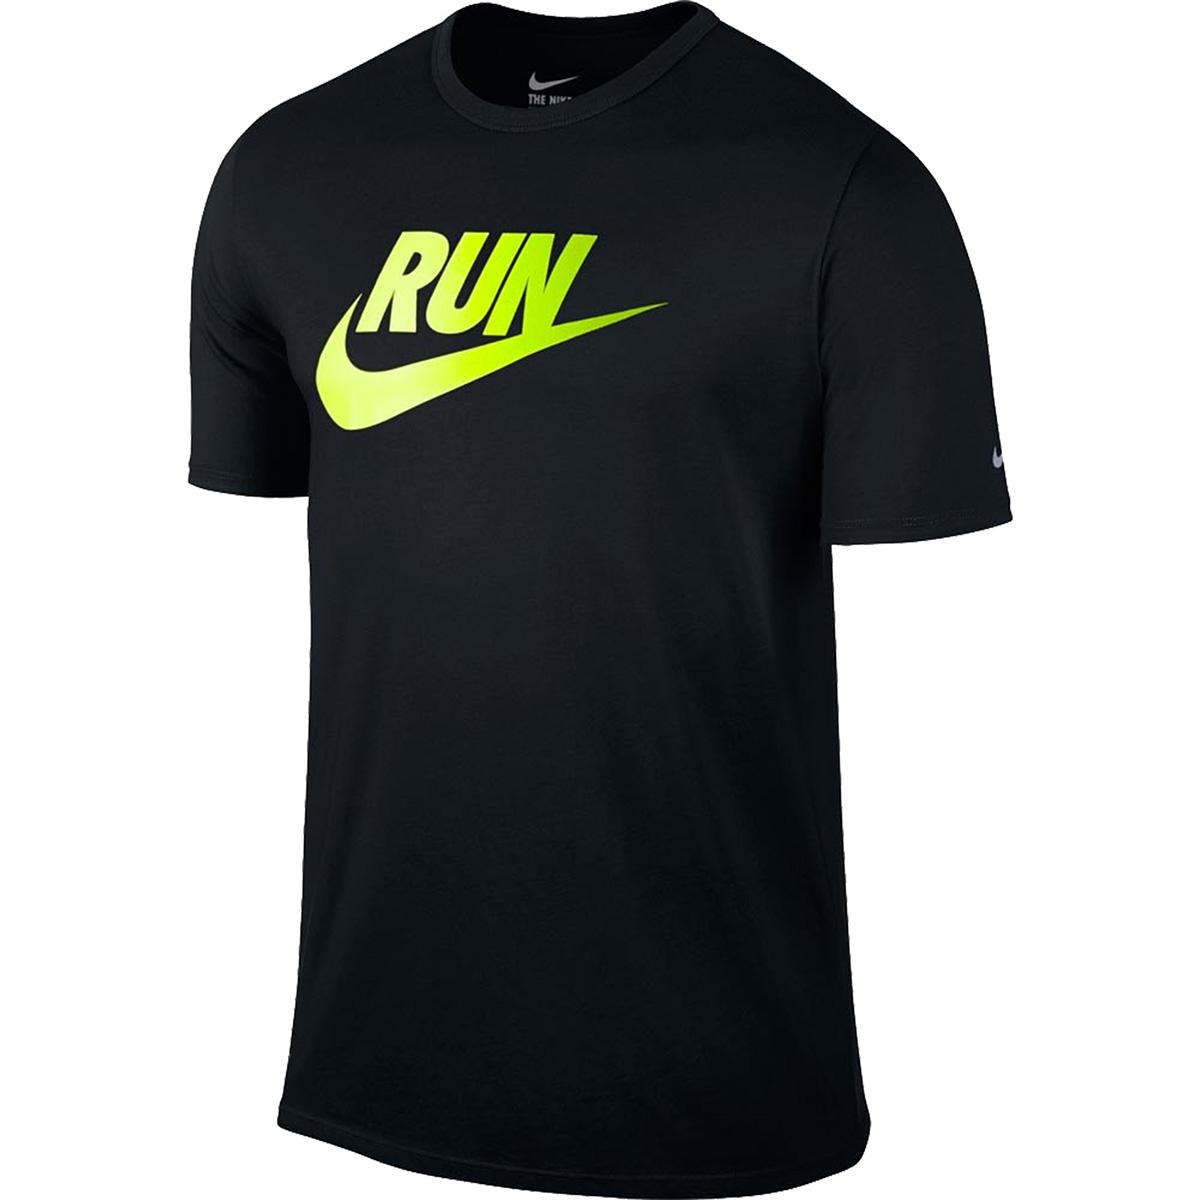 Футболки найк мужские купить. Майка Nike t90. Nike t-Shirt for men. Nike Volt. Футболка найк свуш.